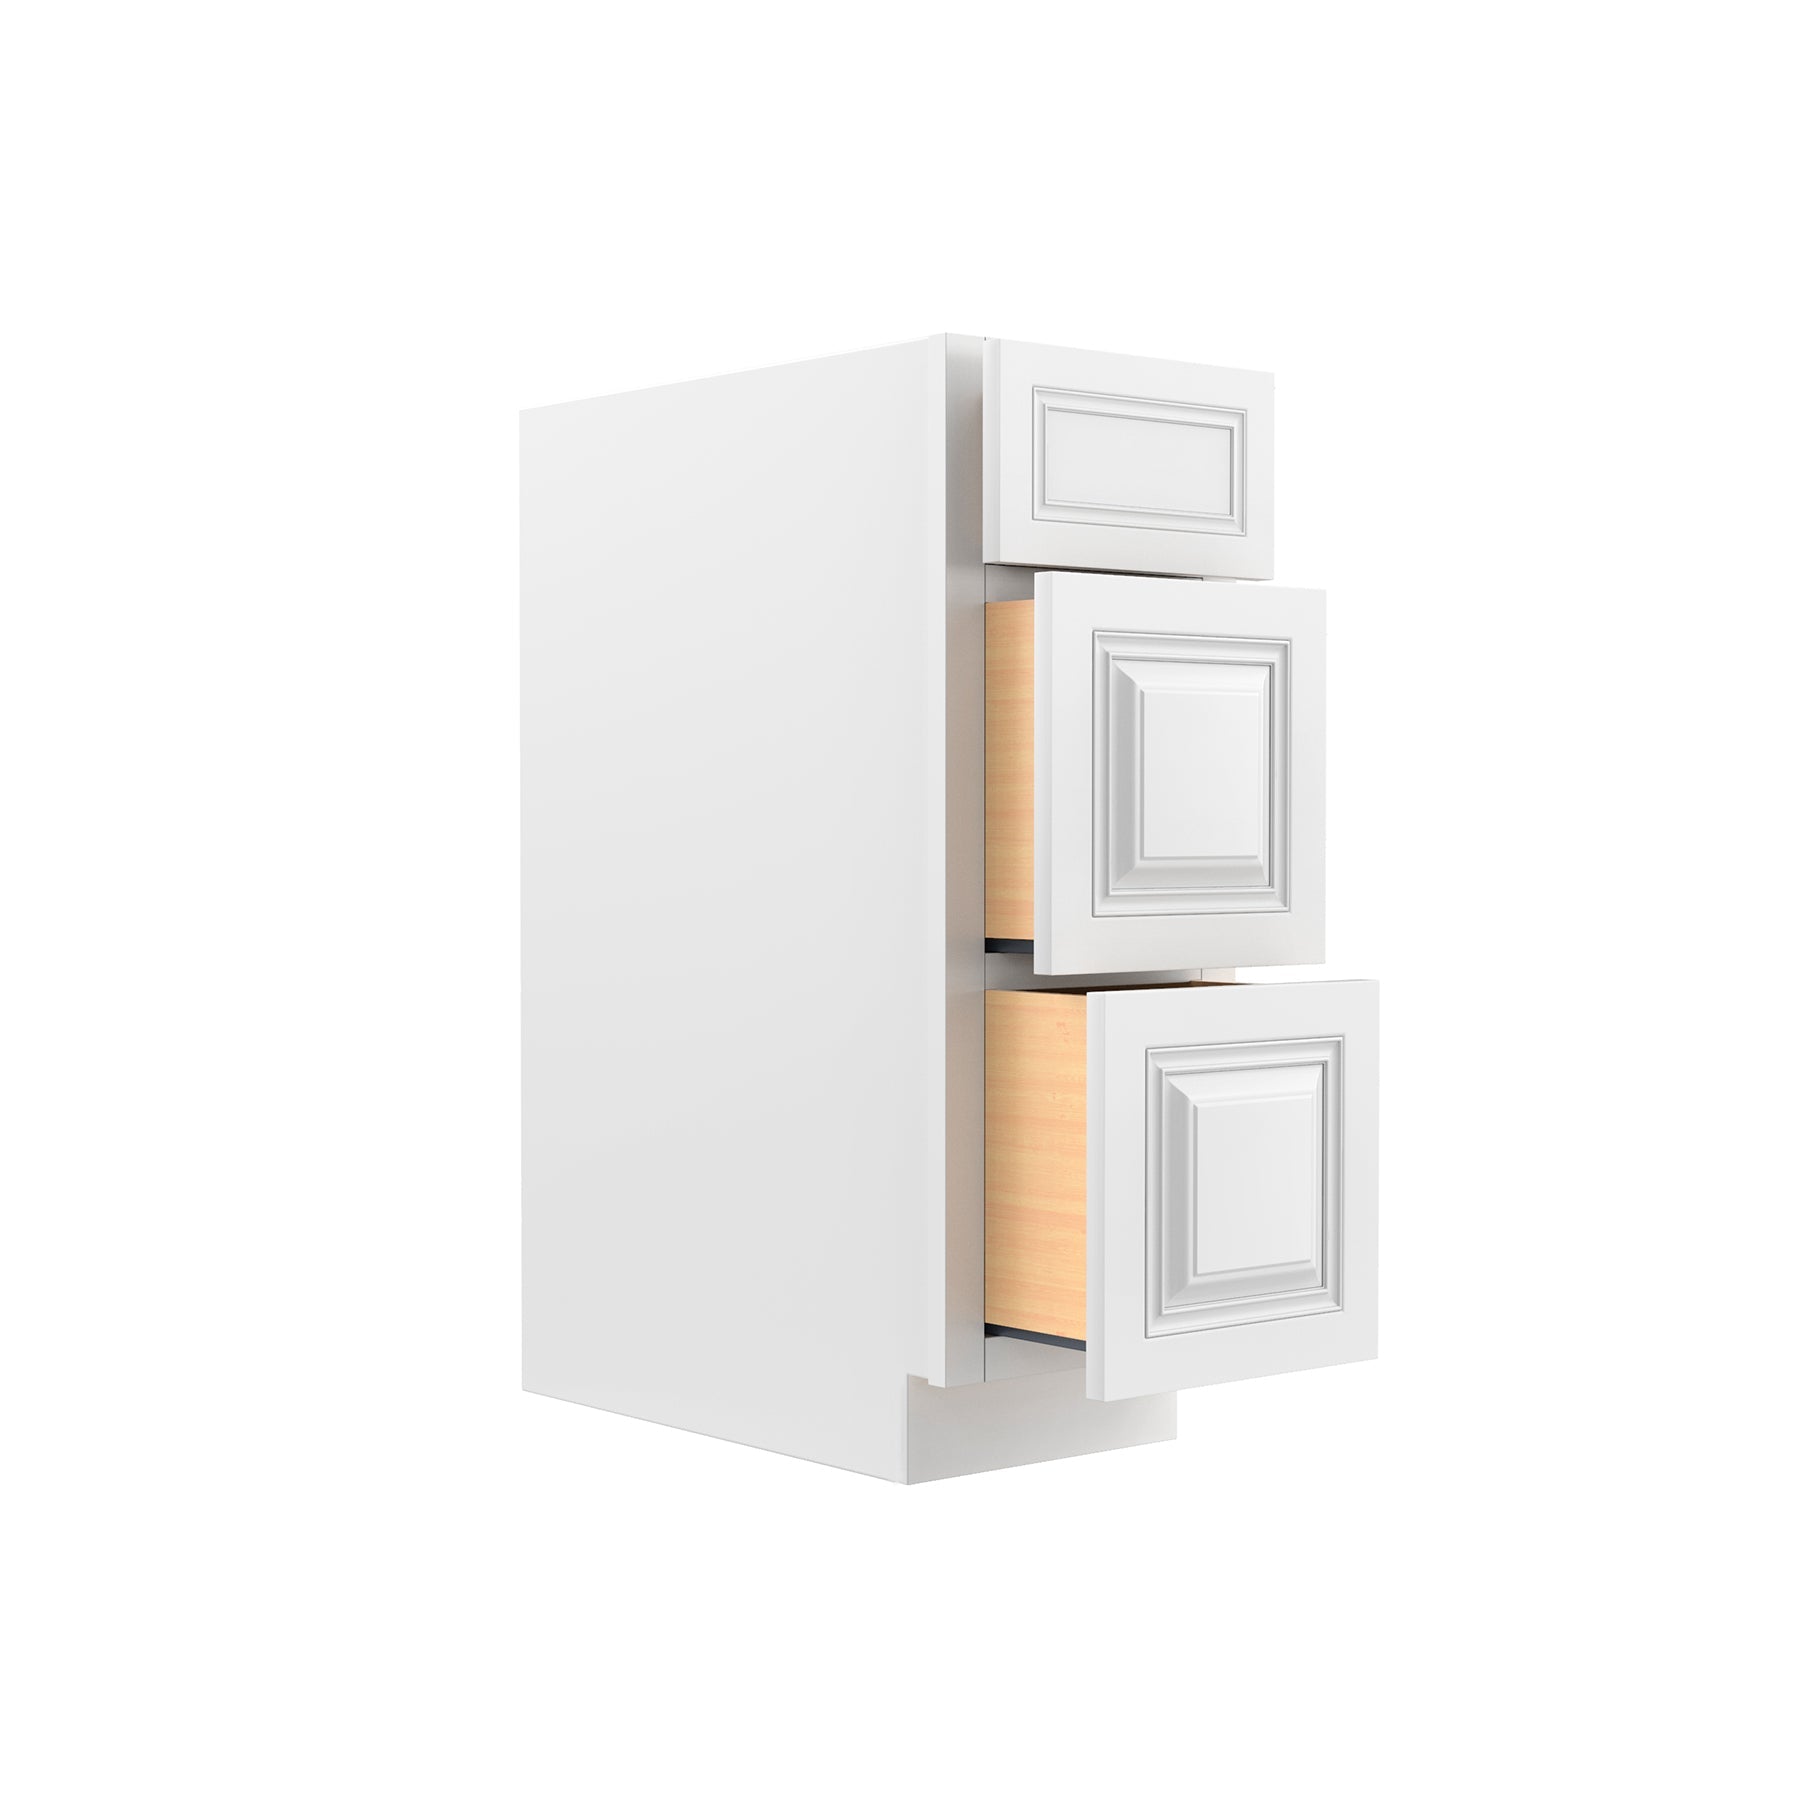 RTA - Park Avenue White - 3 Drawer Base Cabinet | 12"W x 34.5"H x 24"D